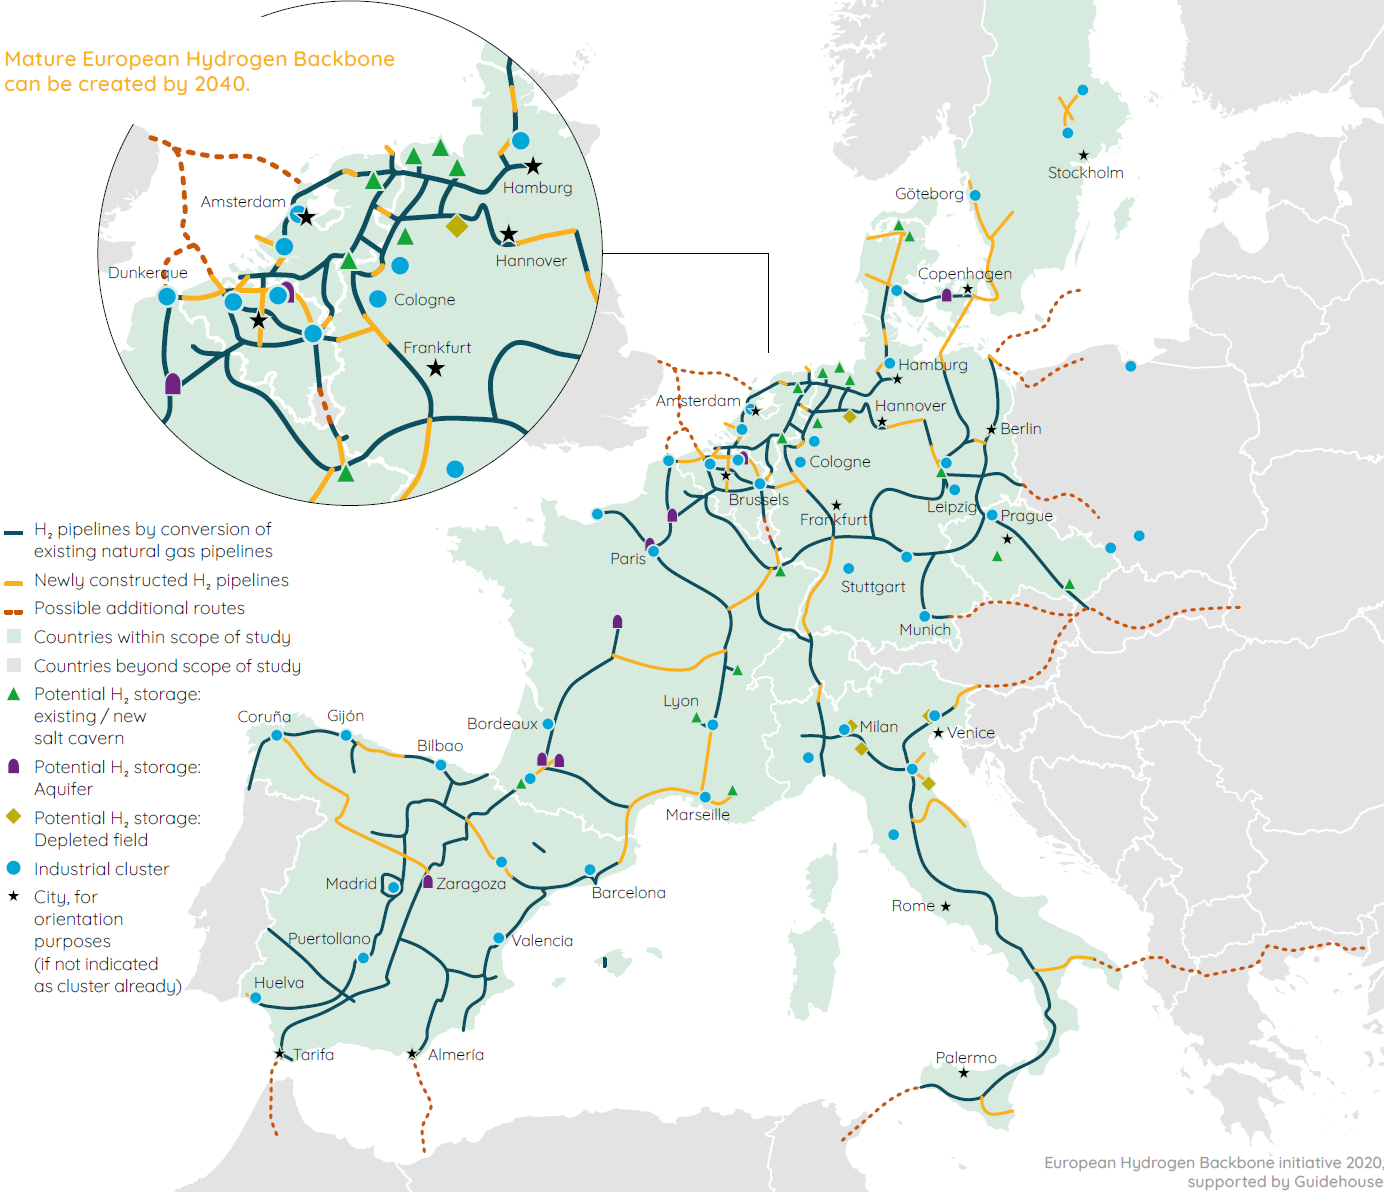 Weiter zur Karte des European Hydrogen Backbone im Endausbau 2040